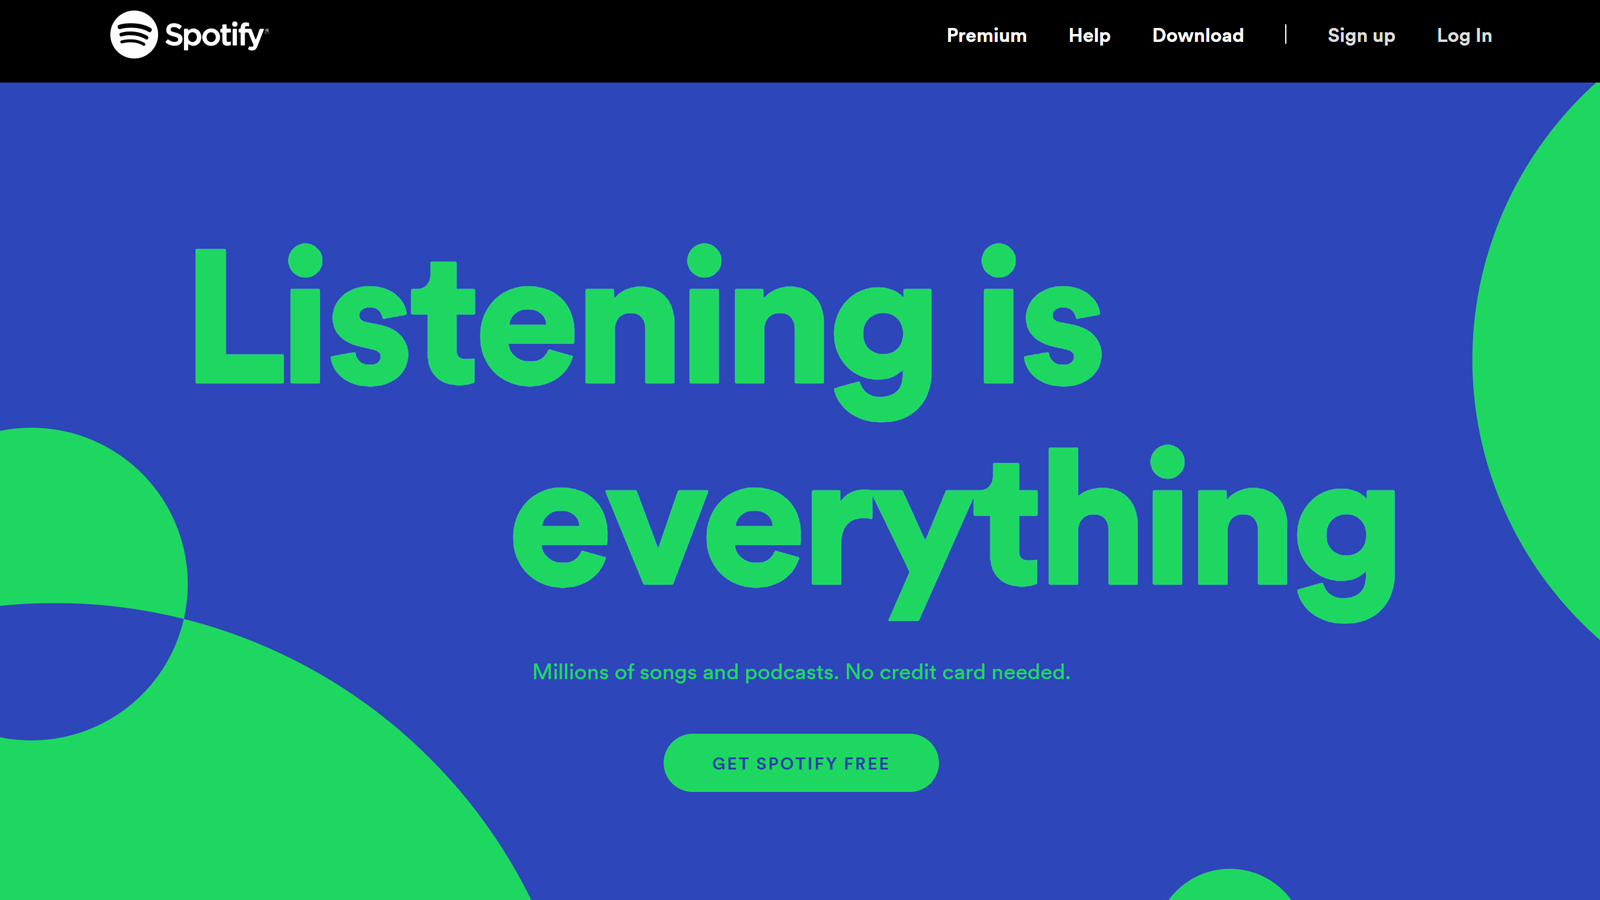 Spotify-website met groen en blauwe tekst en ontwerpen met de tekst